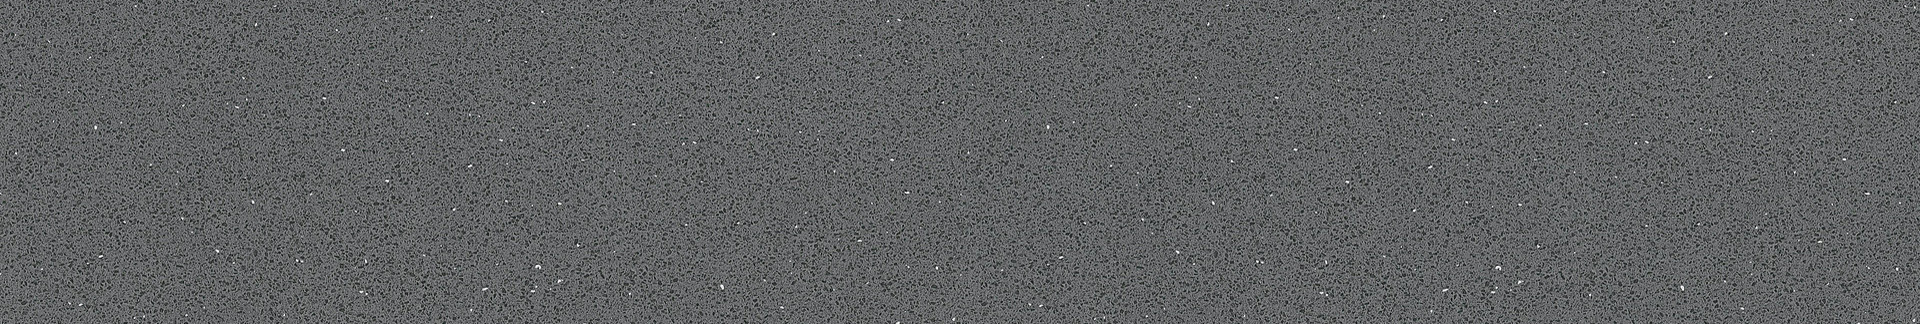 3023-quartz-grey-415x70mm.jpg